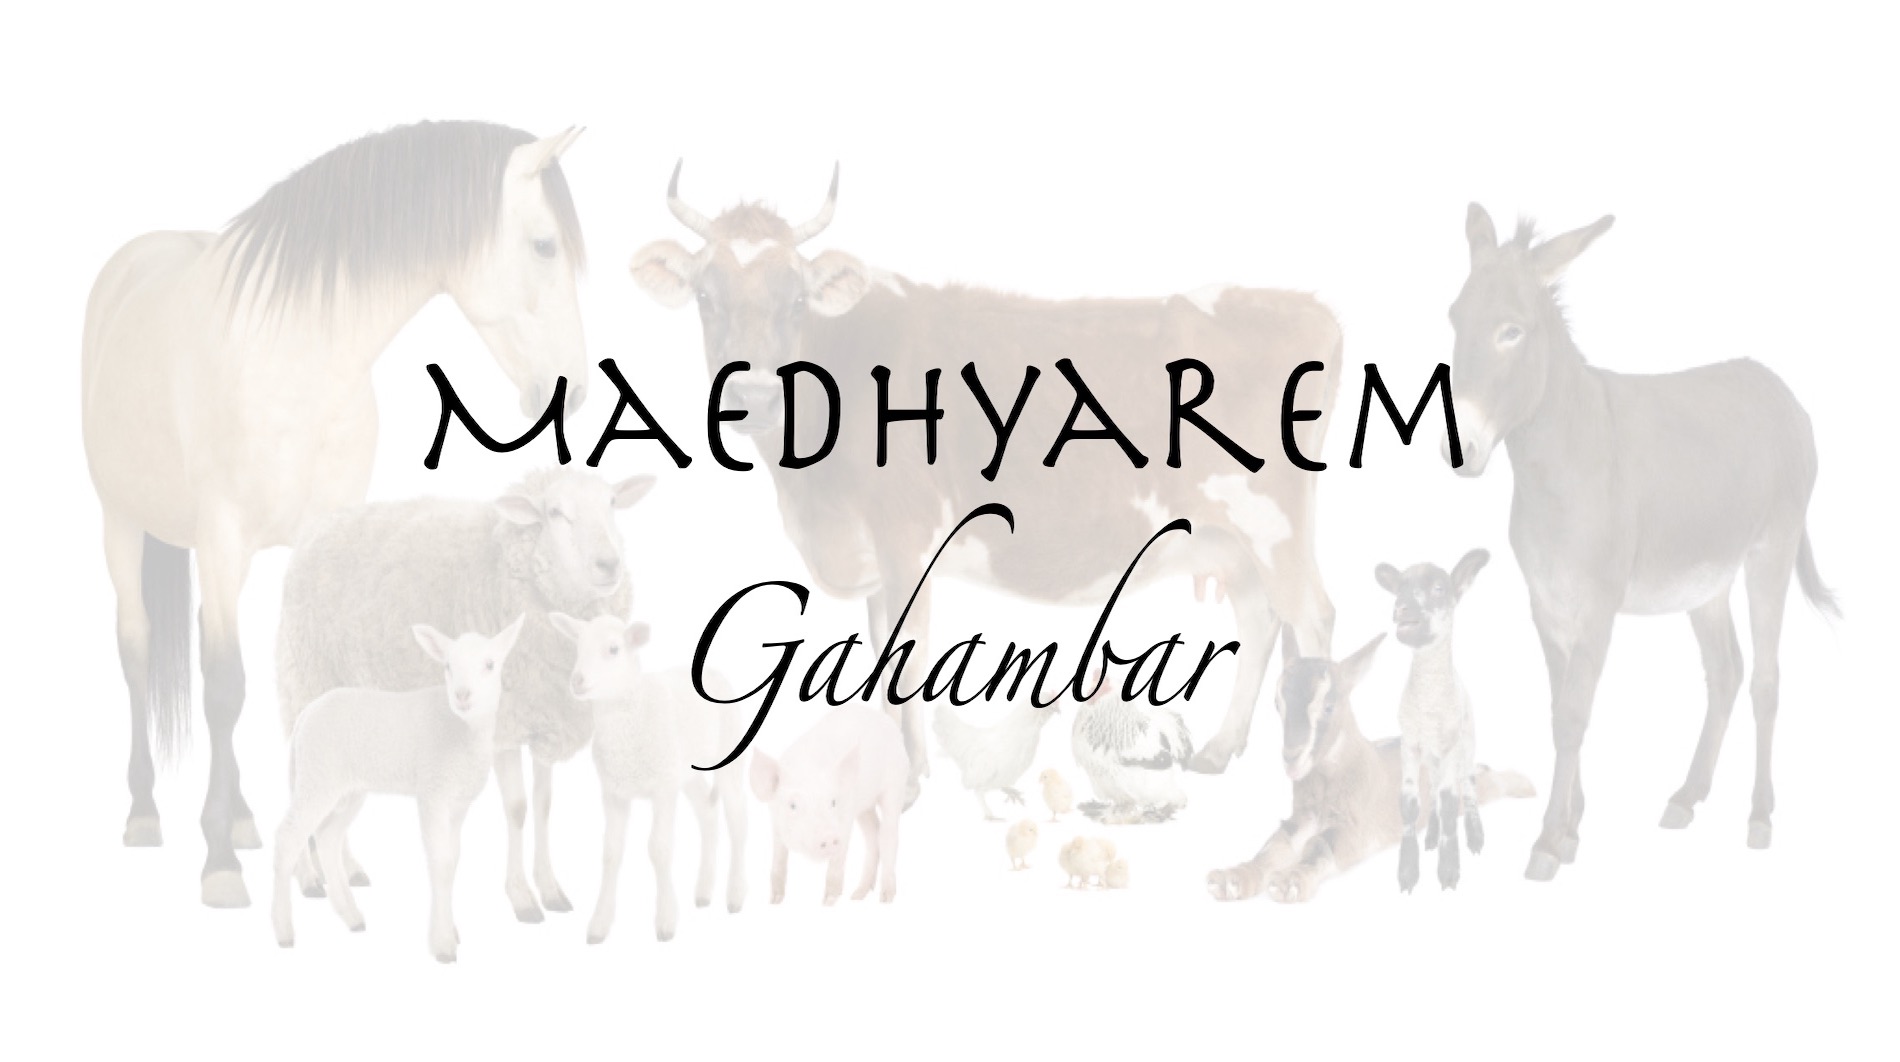 Maedhyarem Gahambar